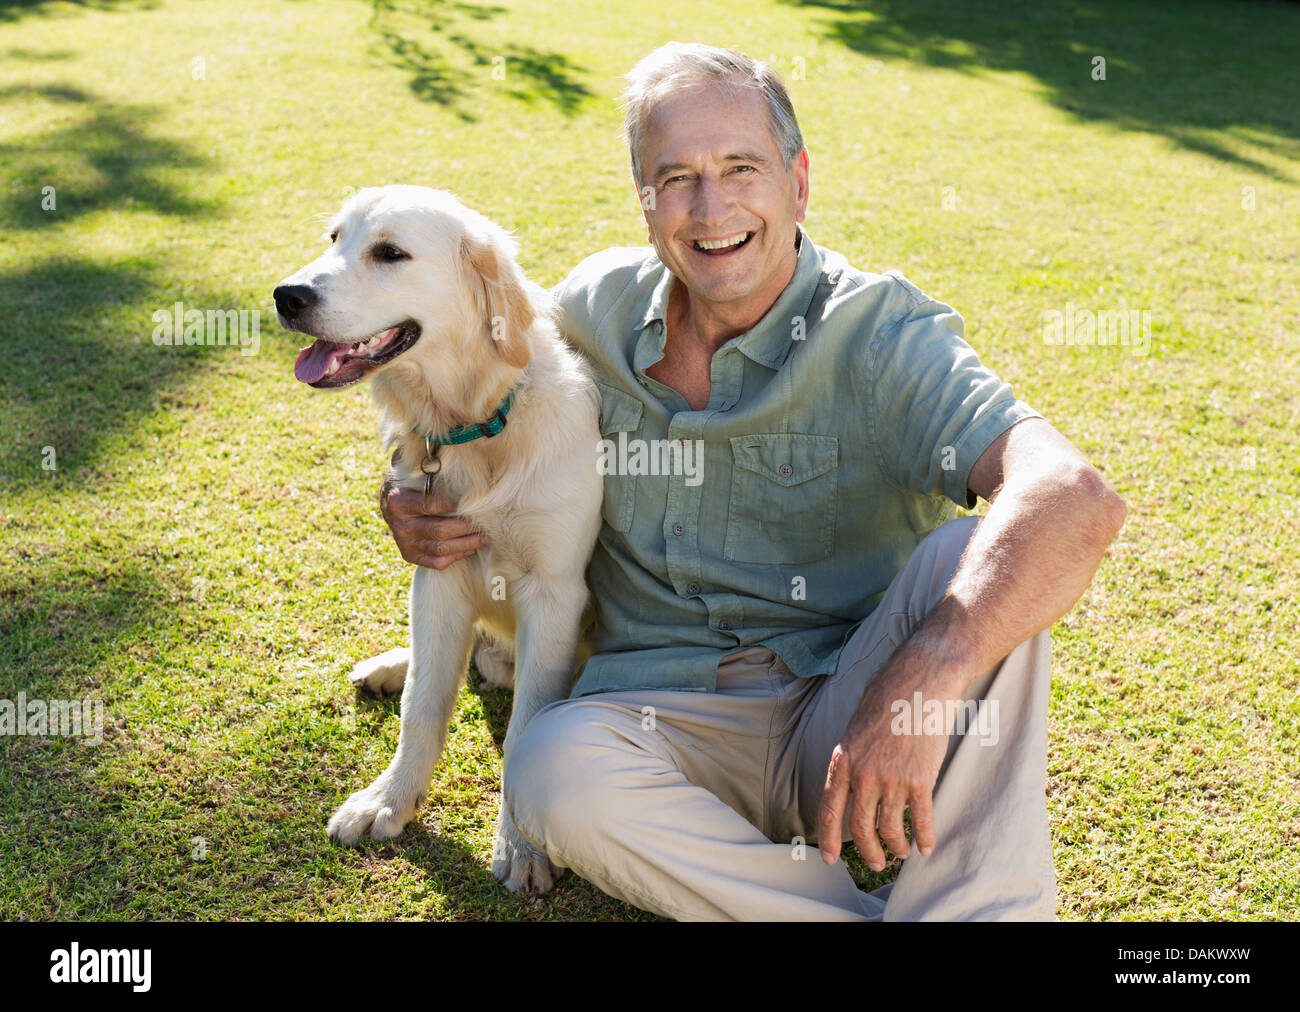 Older Man hugging dog in backyard Banque D'Images